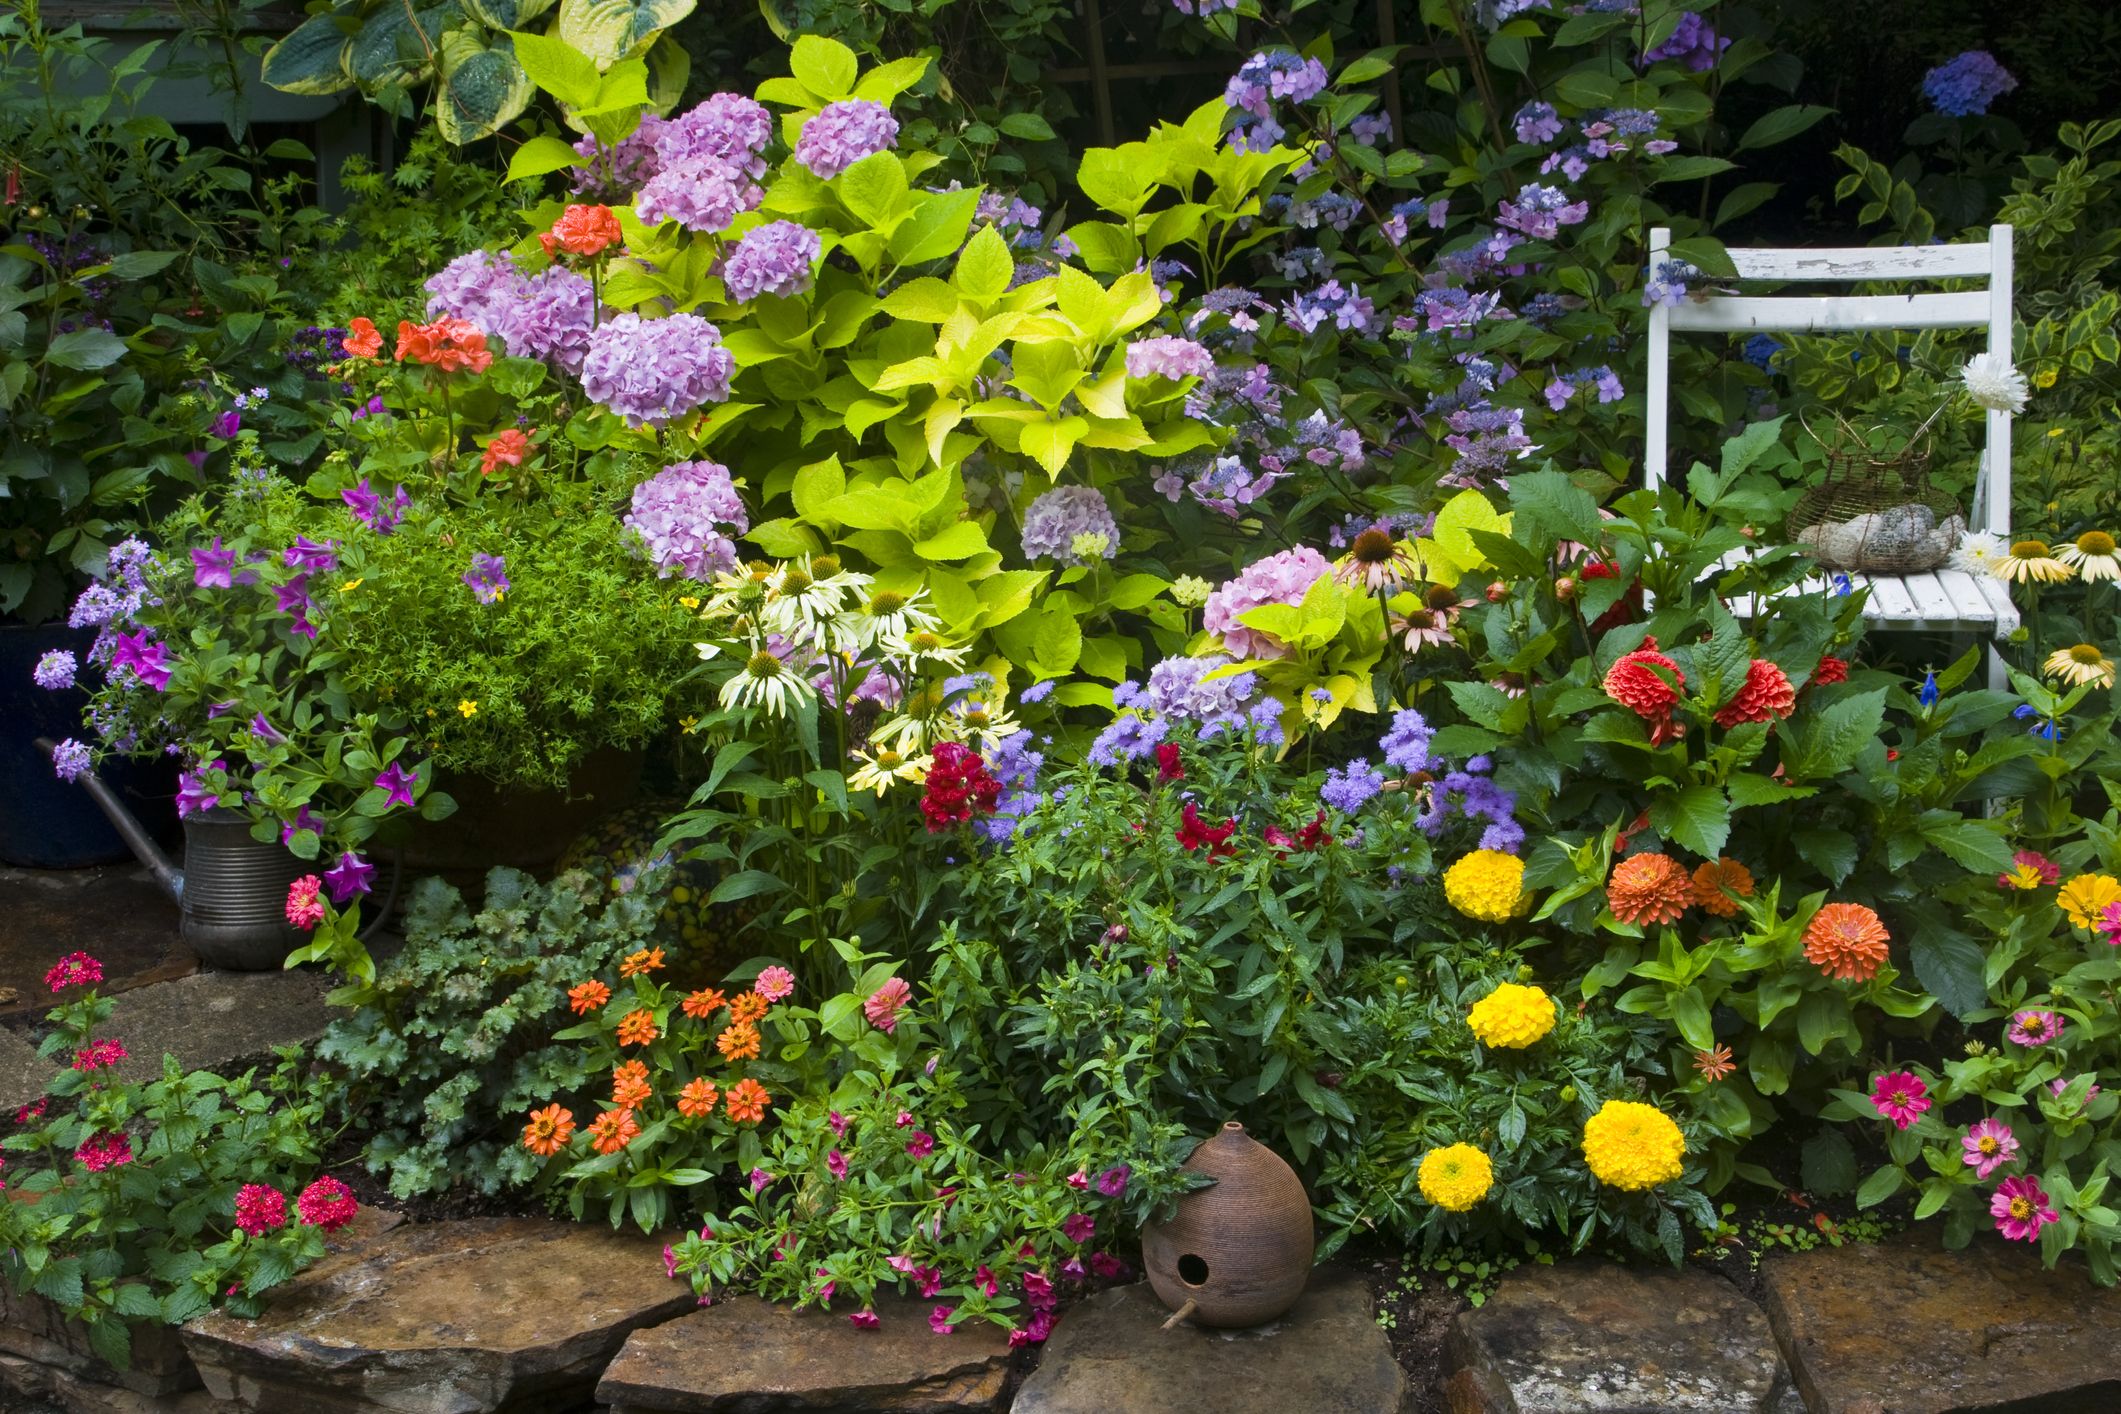 Qué plantar en jardineras de exterior? mejores opciones - Bien hecho